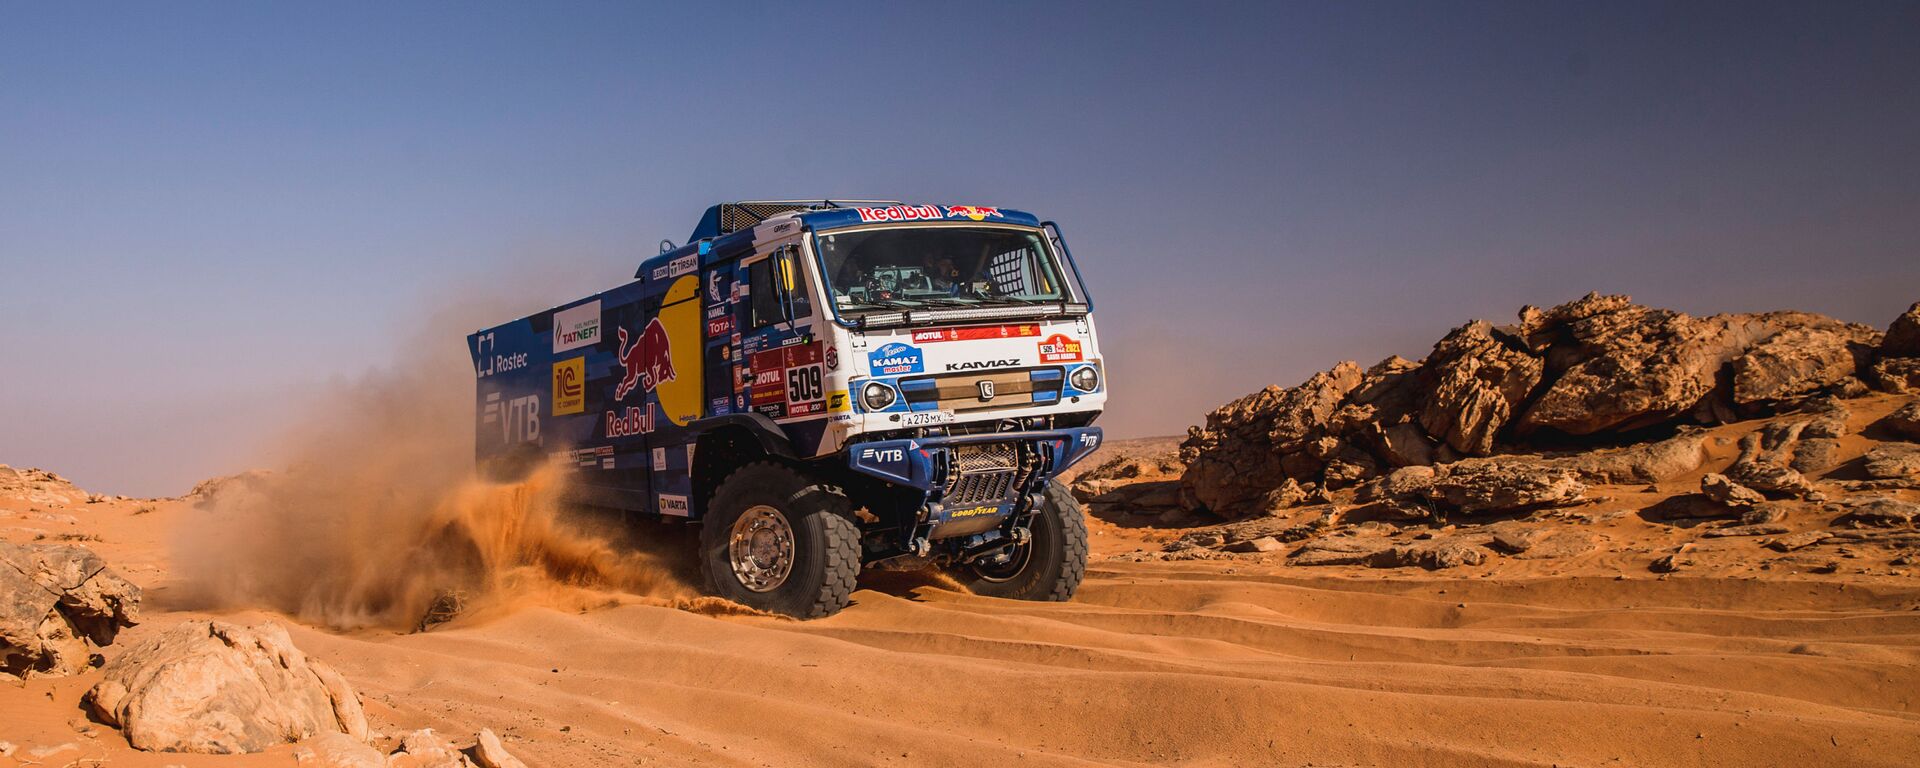 Un camión KAMAZ del equipo ruso KAMAZ-master durante el rally Dakar 2021 - Sputnik Mundo, 1920, 16.01.2021